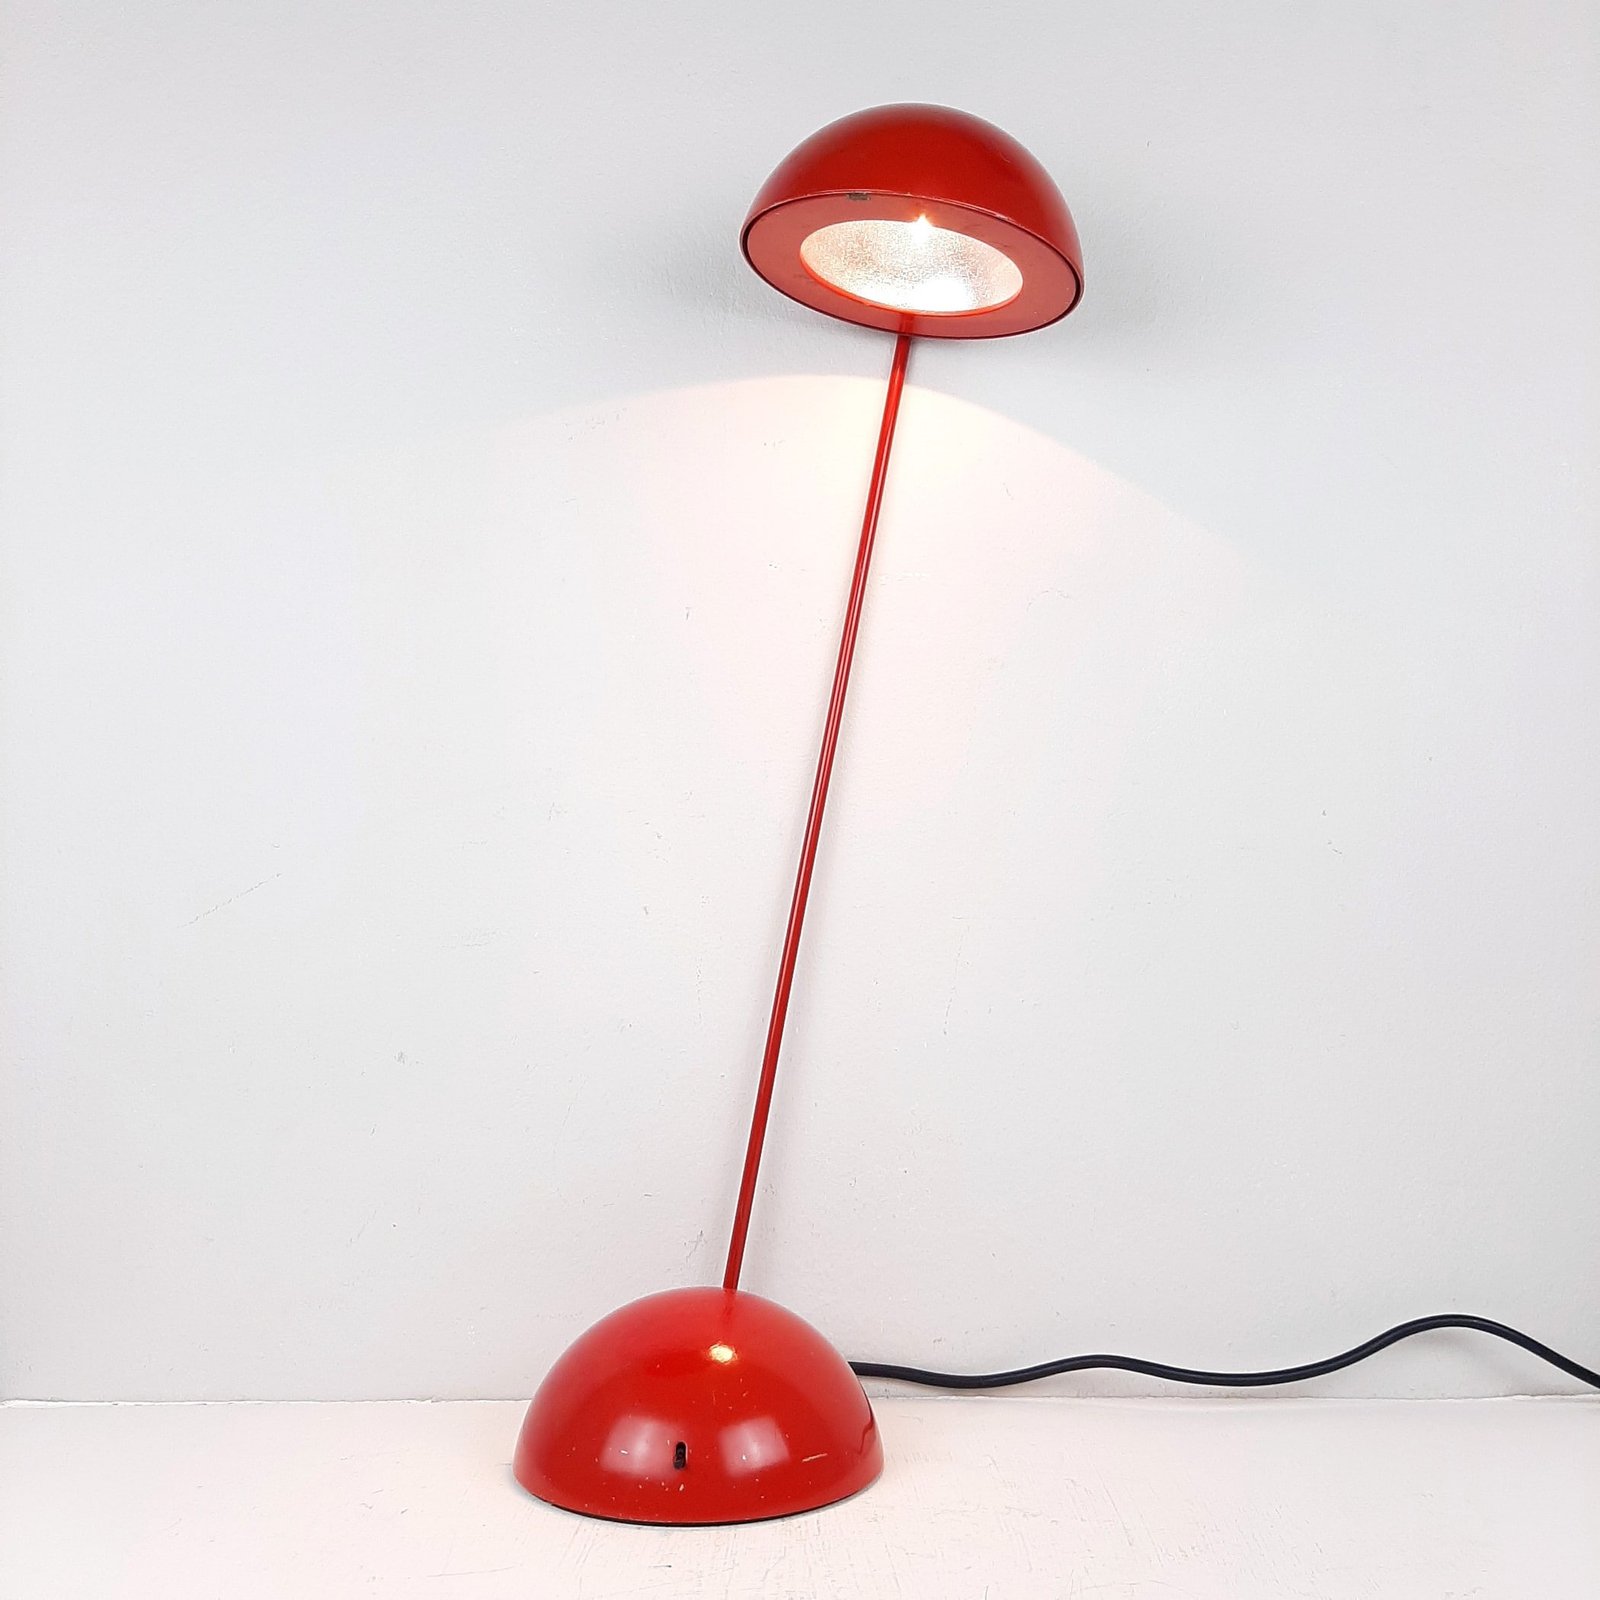 Retro red desk lamp 'Bikini' by Raul Barbieri & Giorgio Marianelli for Tronconi Italy 1980 Mid-century Italian design modern